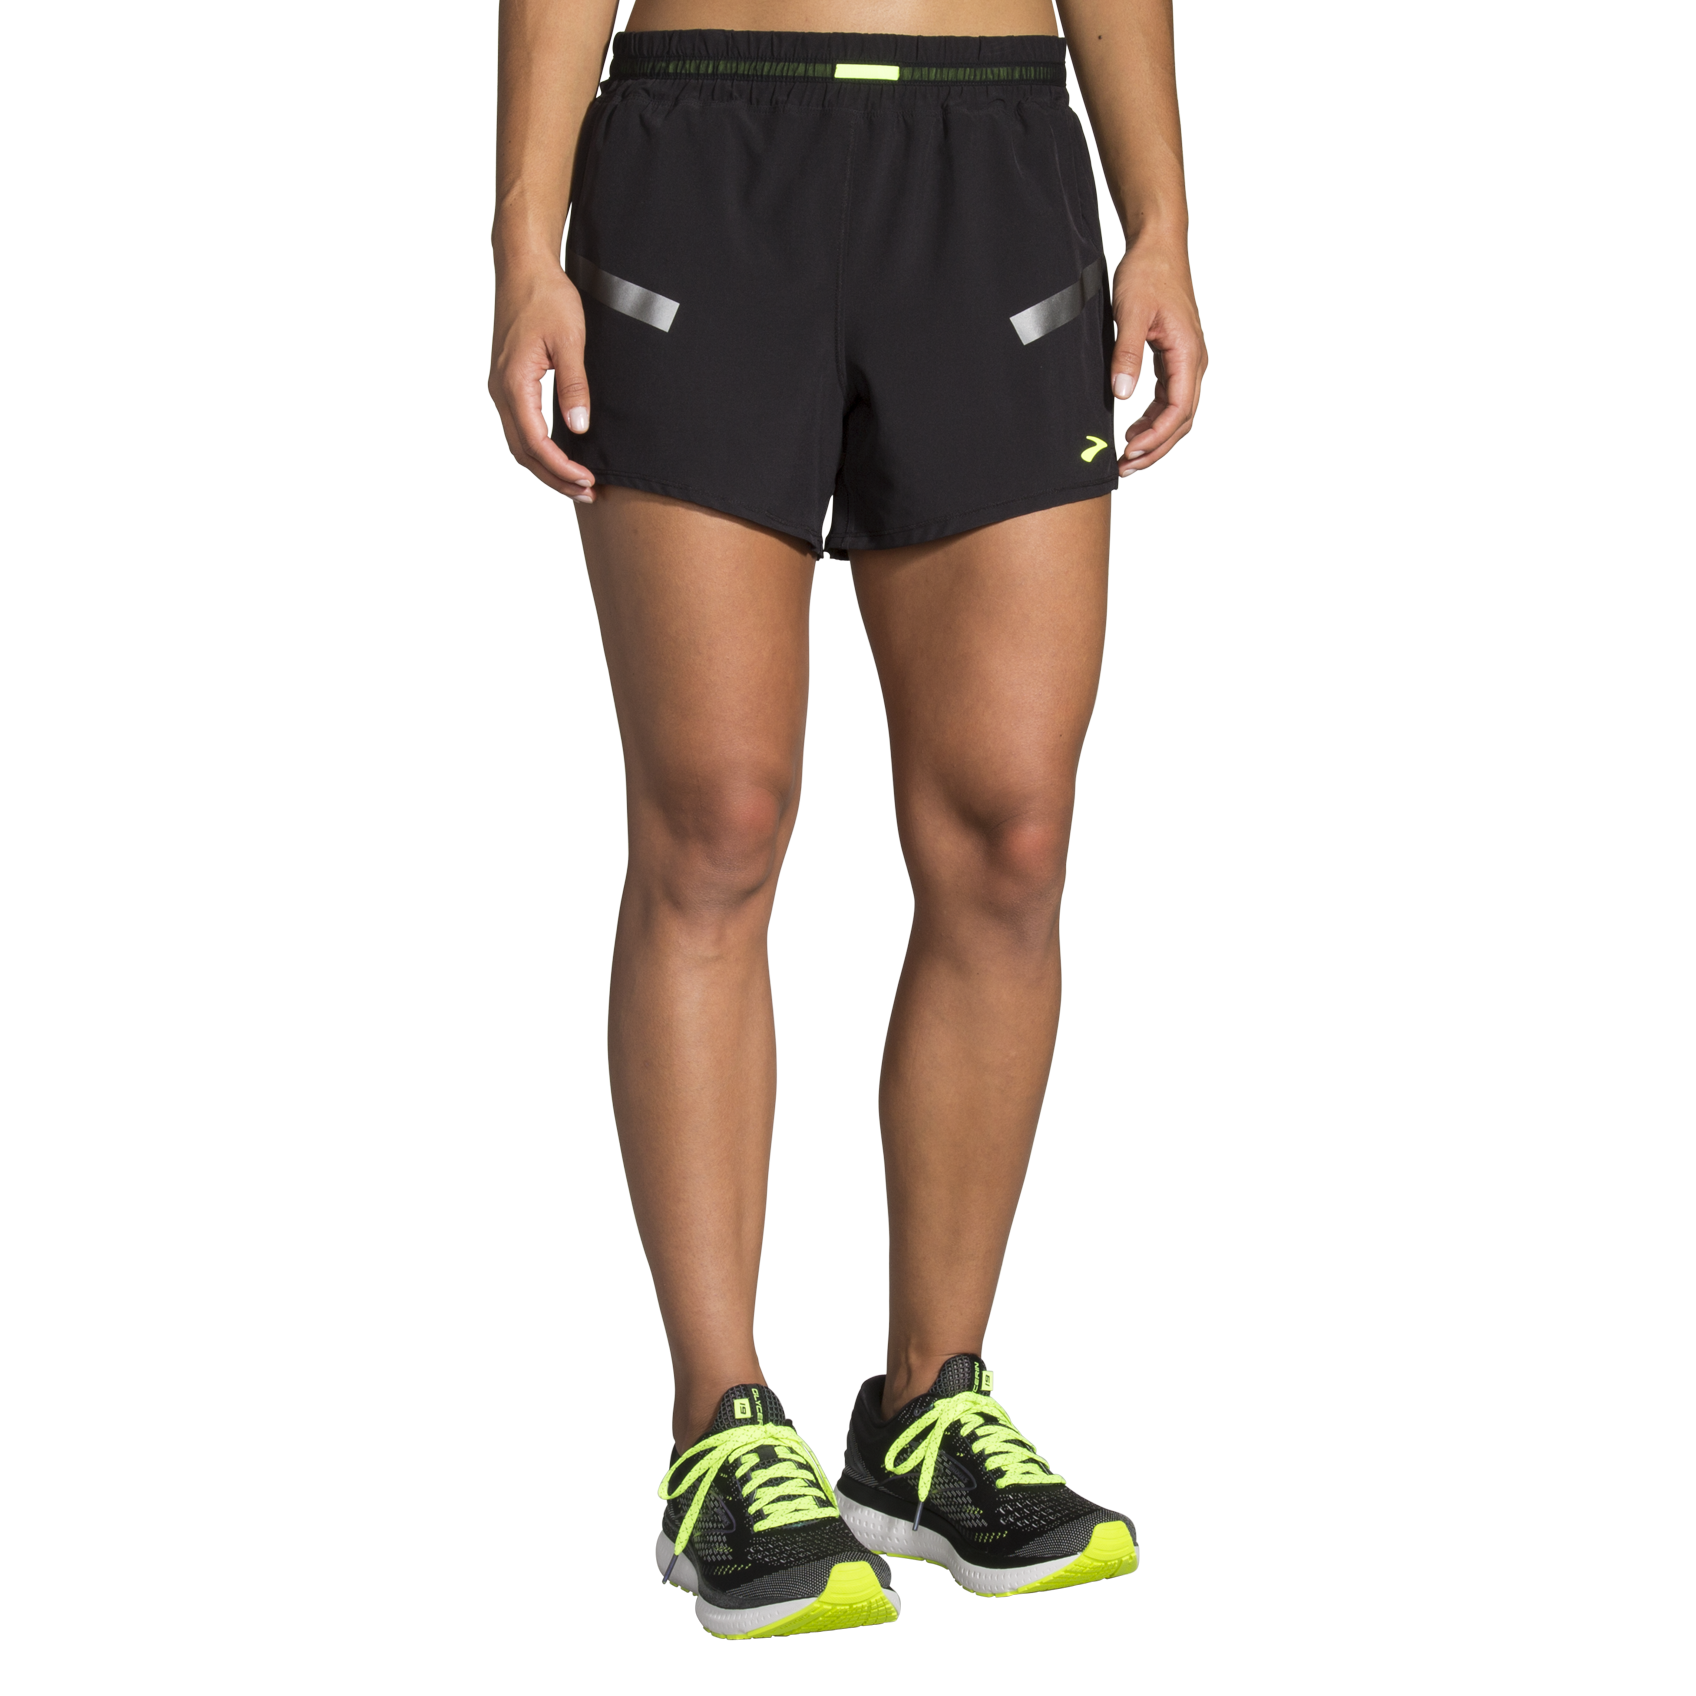 The best women's Lululemon running shorts